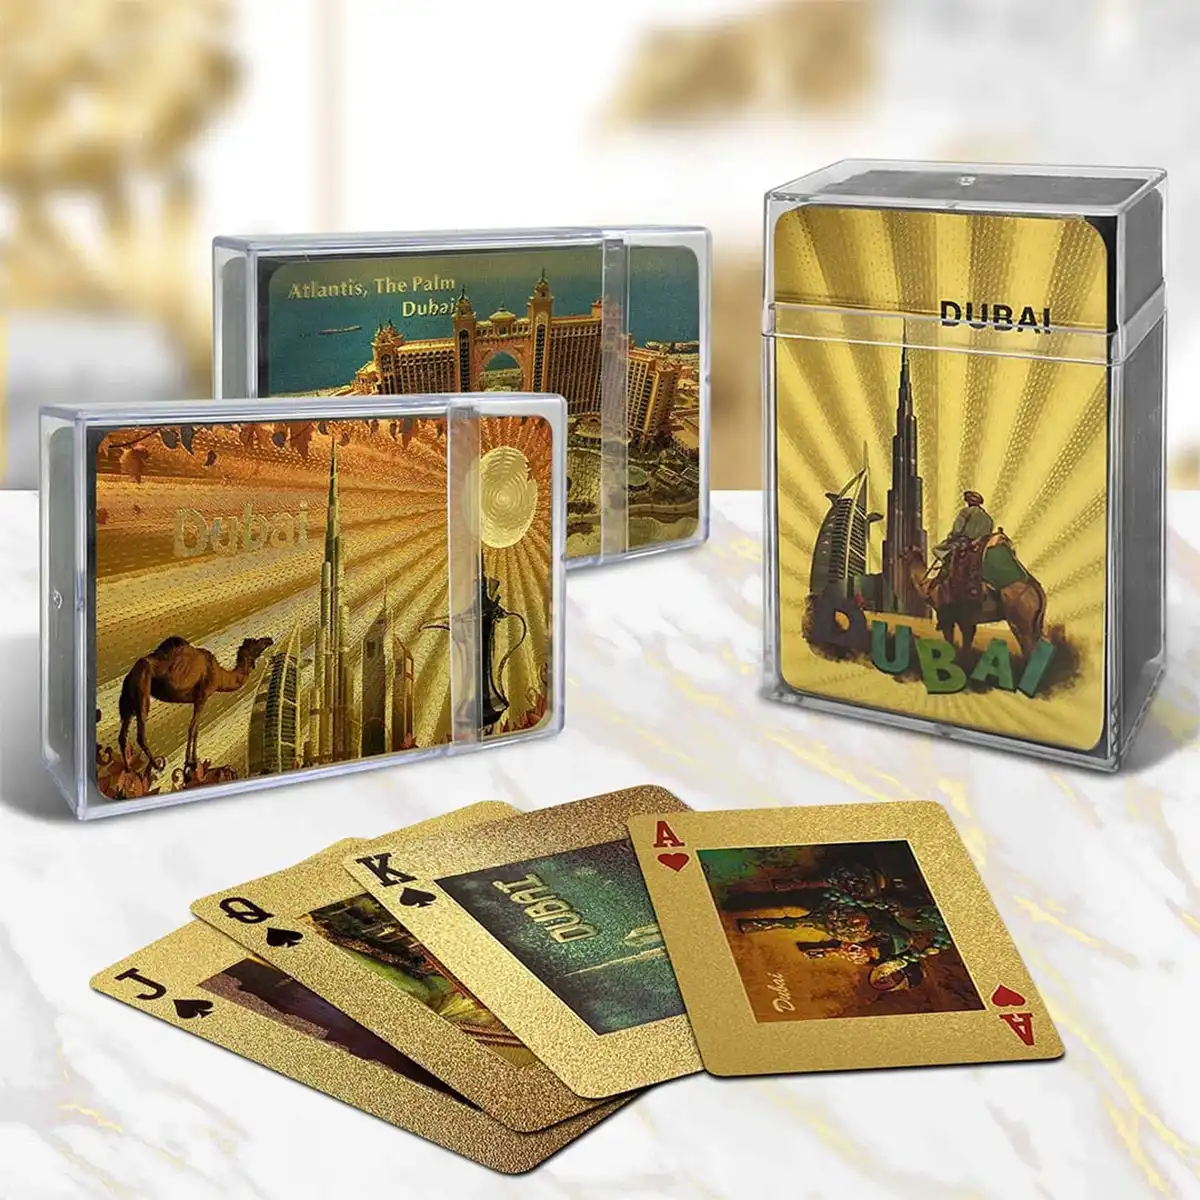 Cartas de baralho de folha de ouro com mistério Dubai